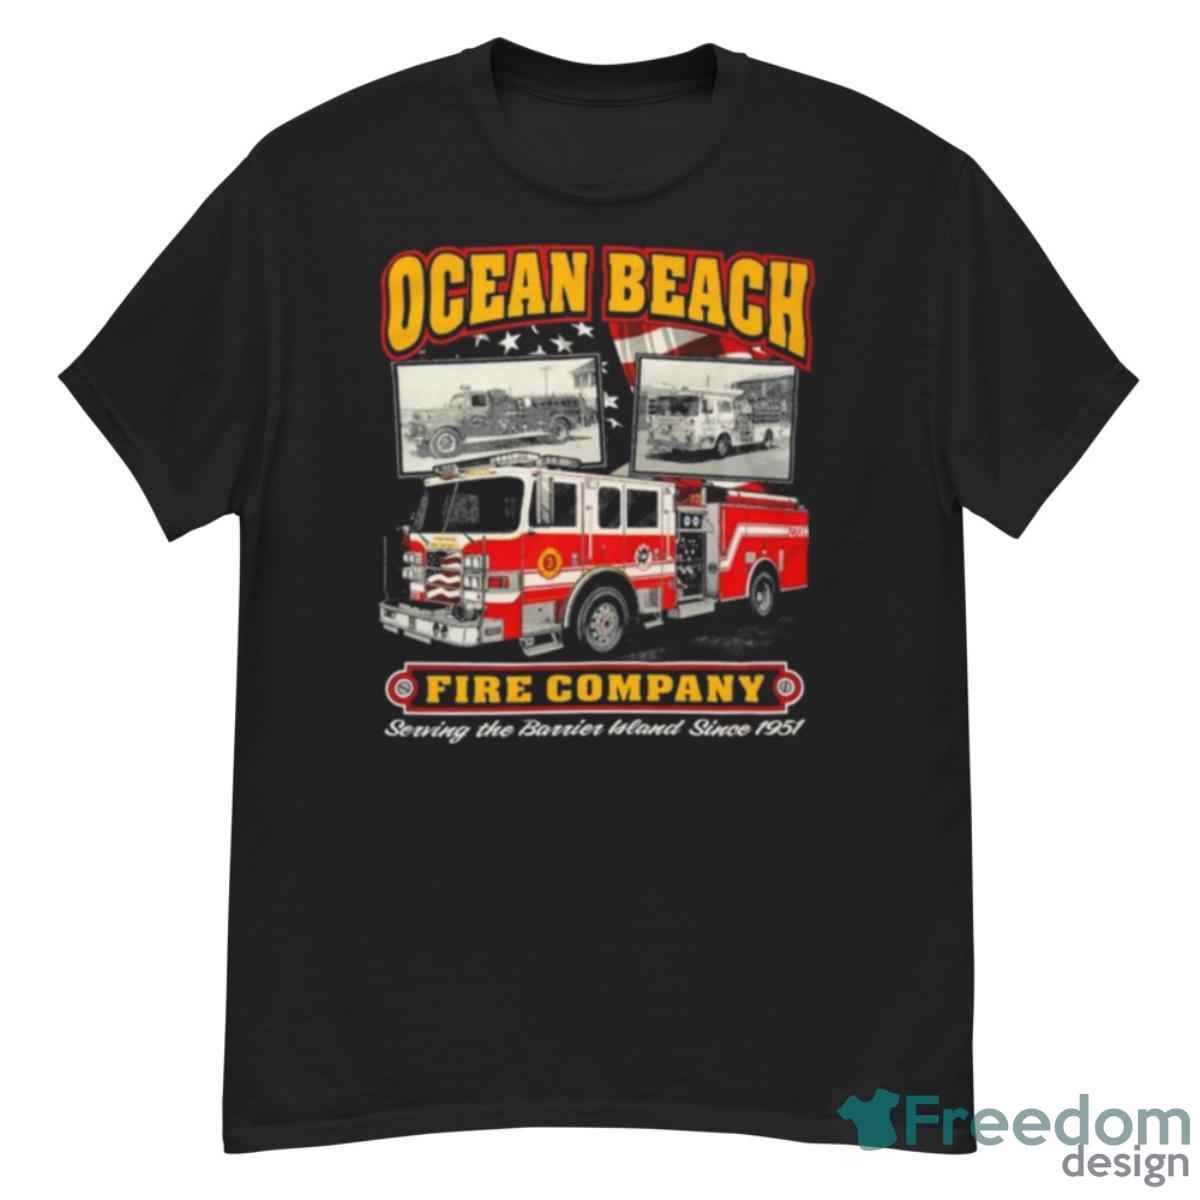 Ocean Beach Fire Company Serving The Berrien Bland Since 1951 Shirt - G500 Men’s Classic T-Shirt